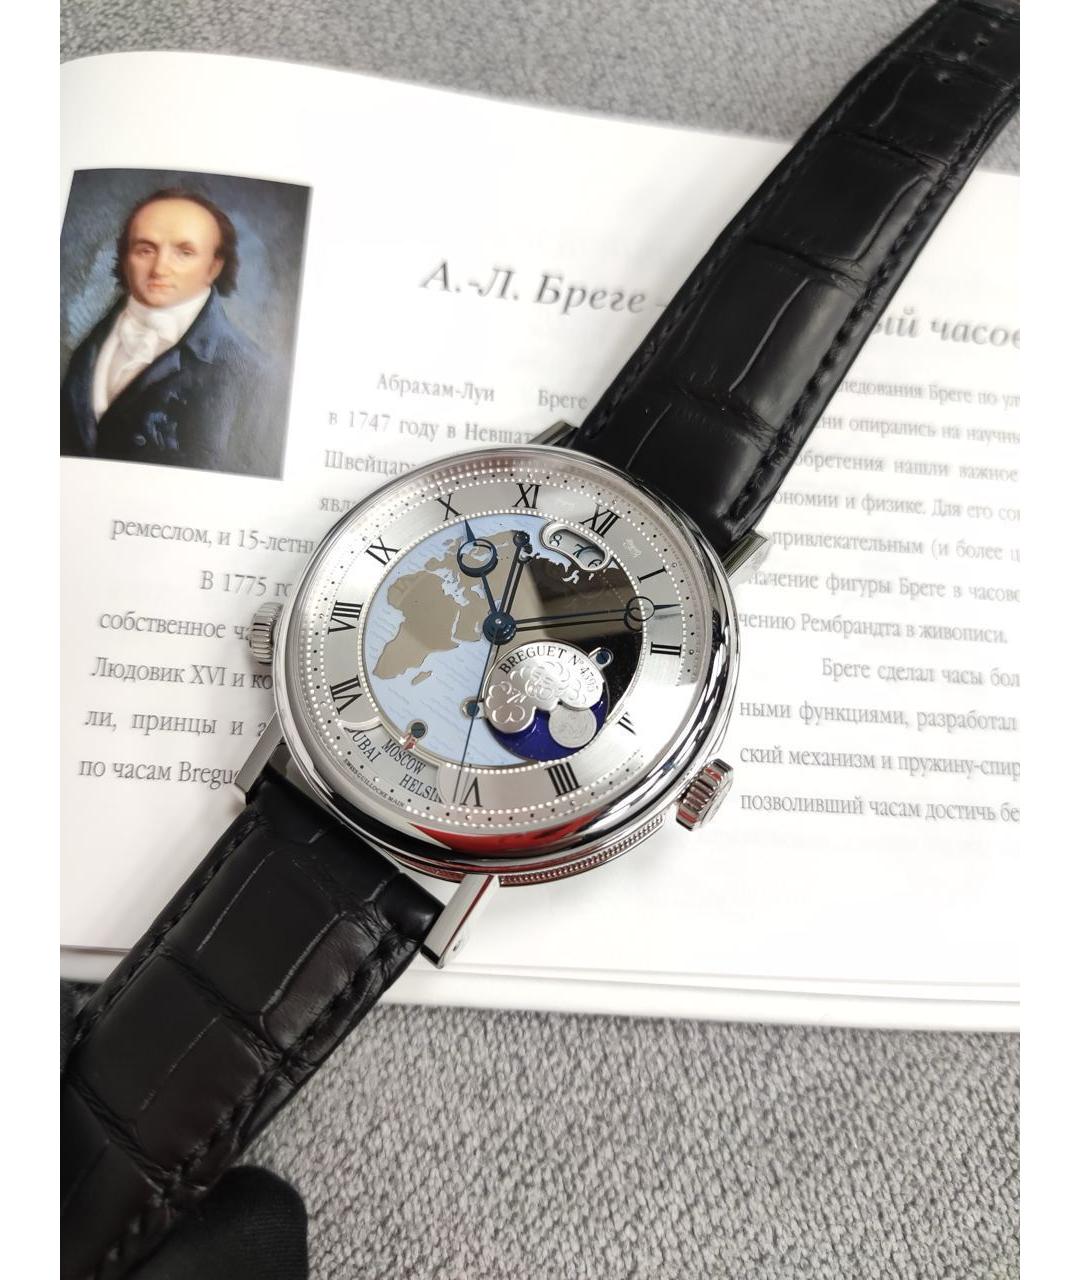 Breguet Платиновые часы, фото 2